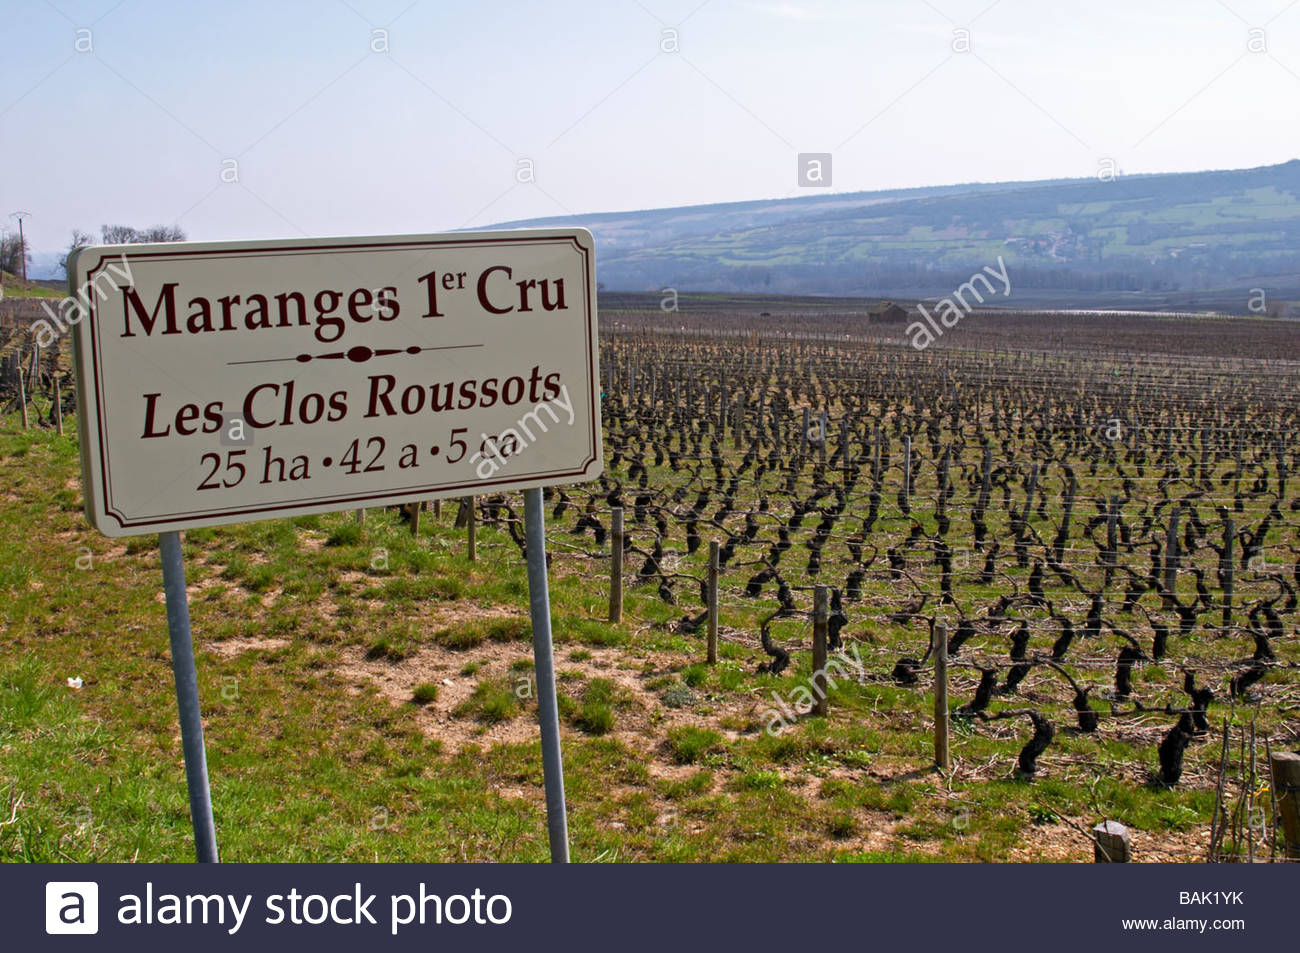 vineyard-les-clos-roussots-dezize-les-maranges-santenay-cote-de-beaune-BAK1YK